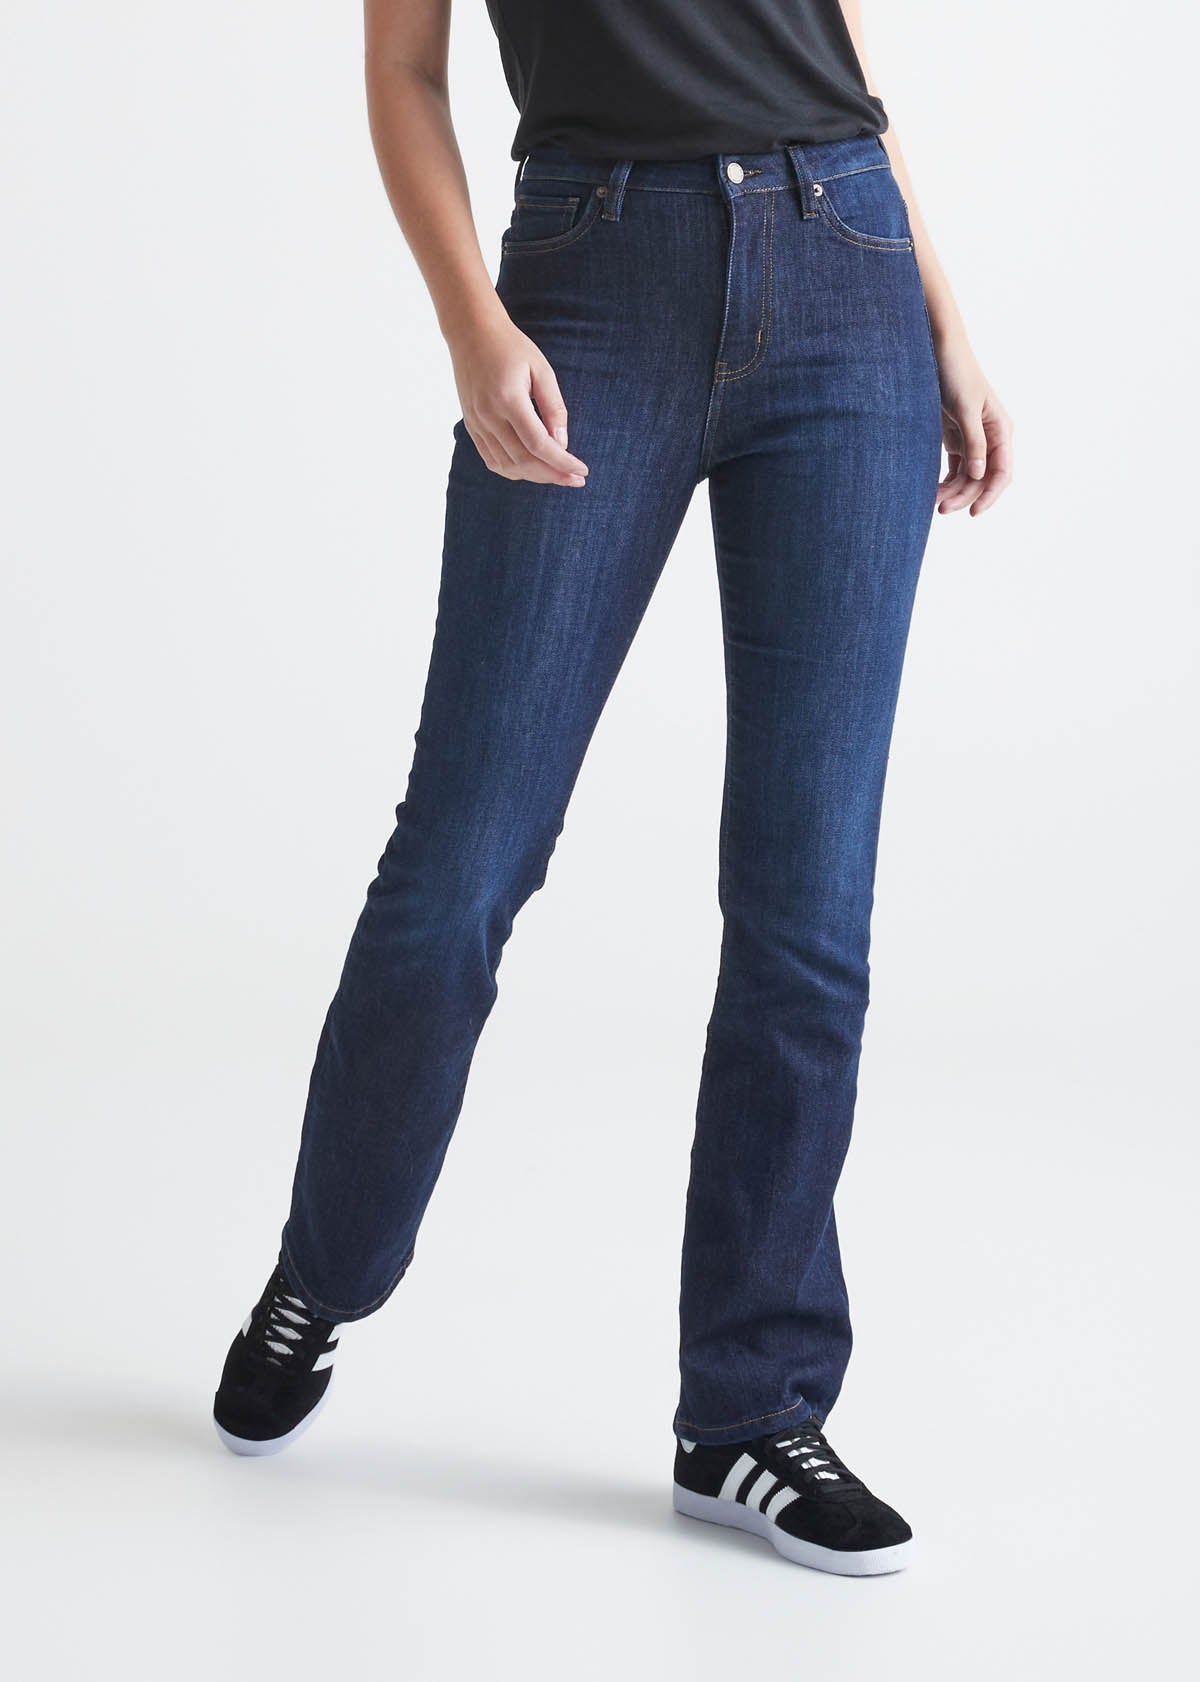 Women's Bootcut Denim Jeans High Rise Stretch Juniors Boot Cut